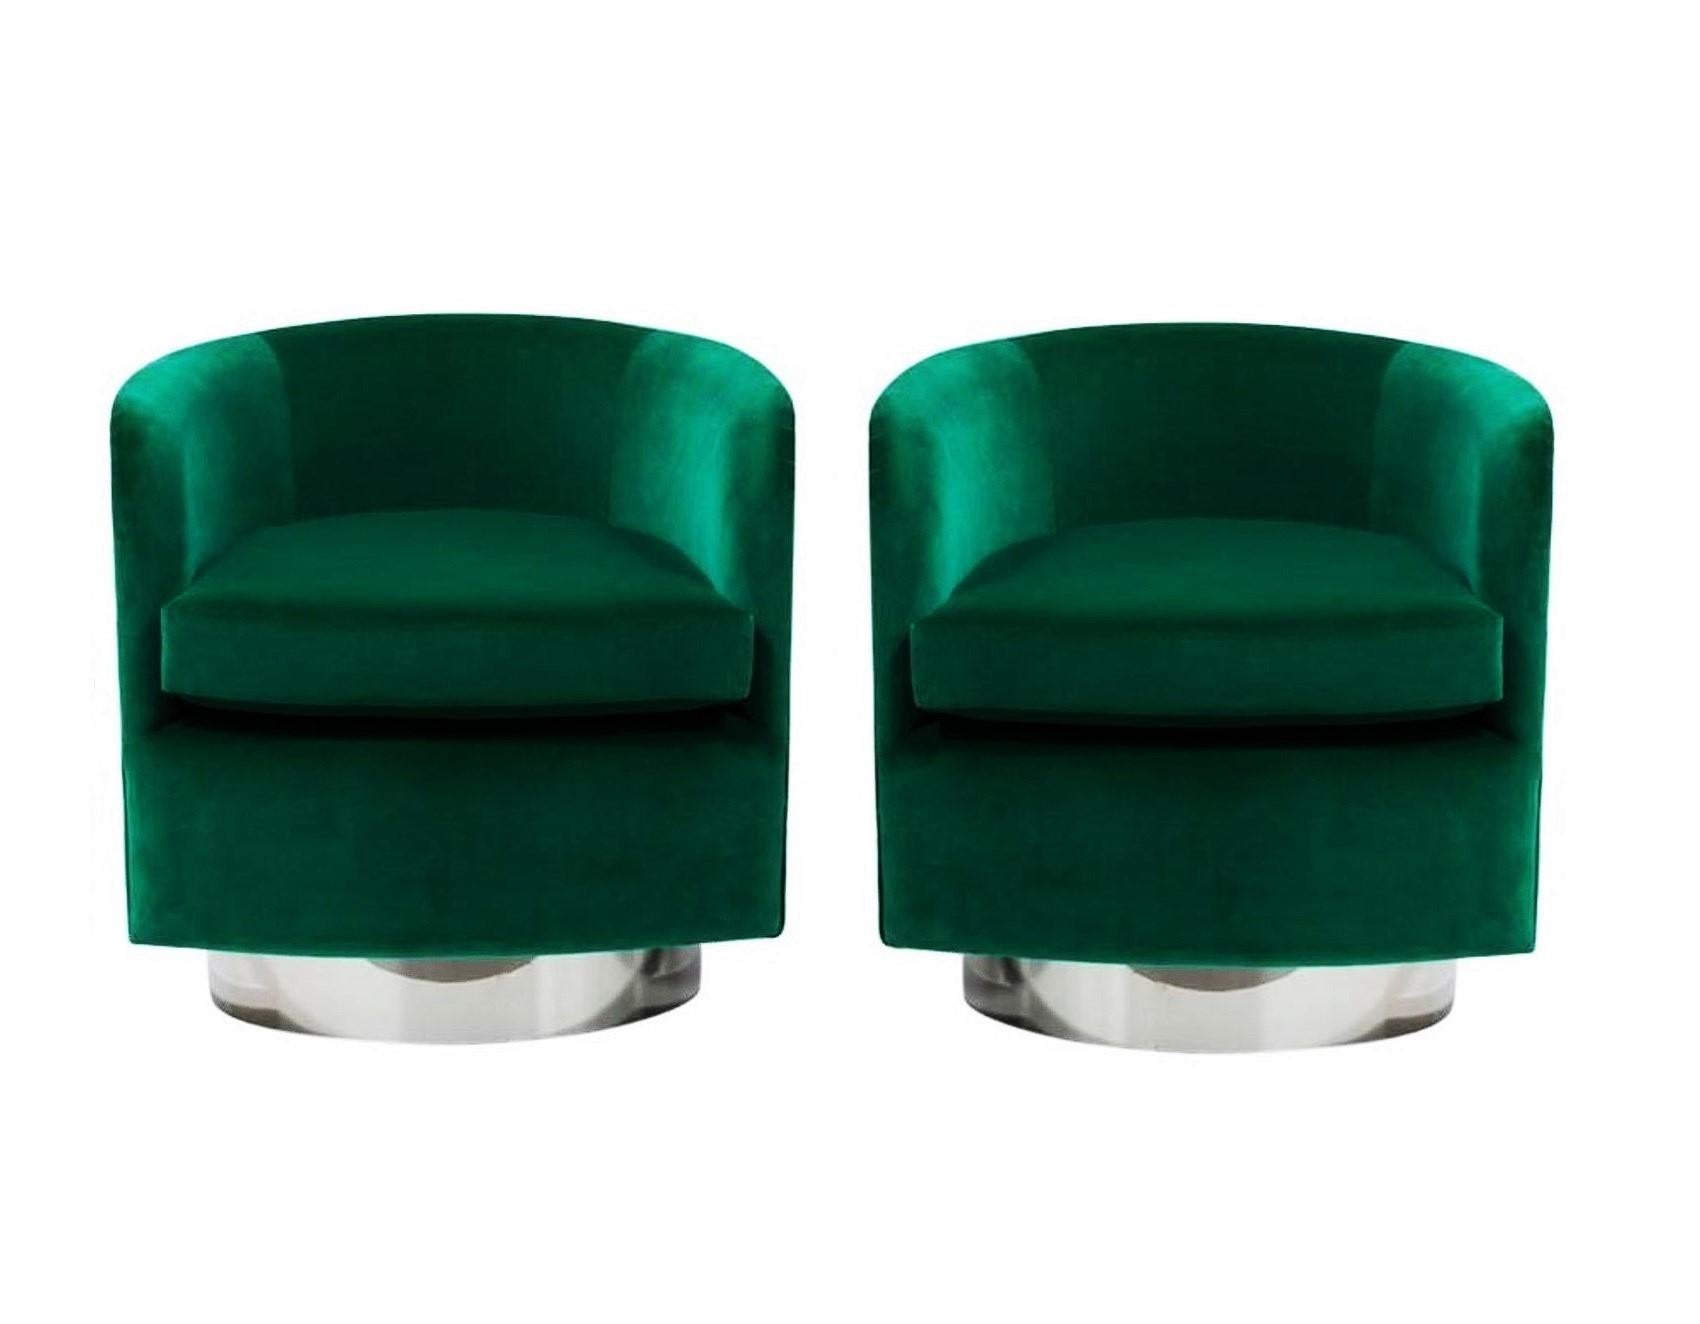 Dieses atemberaubende Paar Fassstühle in Erbstückqualität von Milo Baughman für Thayer Coggin. Superhochwertige Drehstühle mit luxuriösem grünem Samtbezug, der einen schönen Kontrast zu den glänzenden, hochglanzverchromten Rückenlehnen und Gestellen